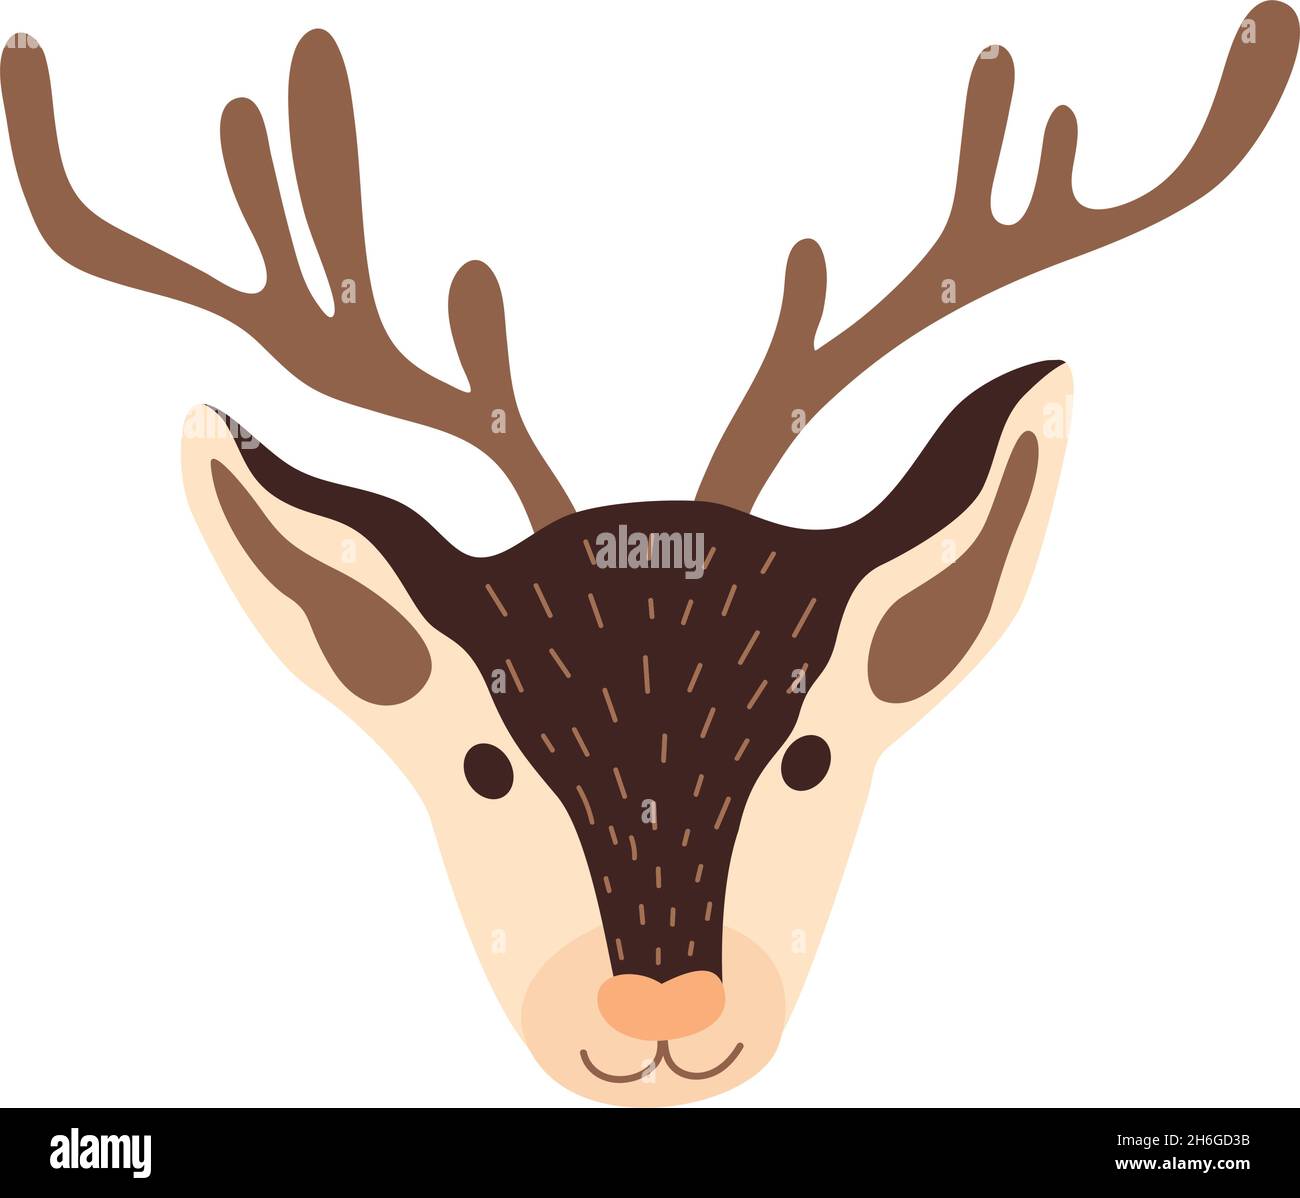 Deer head vector illustration Stock Vector Image & Art - Alamy